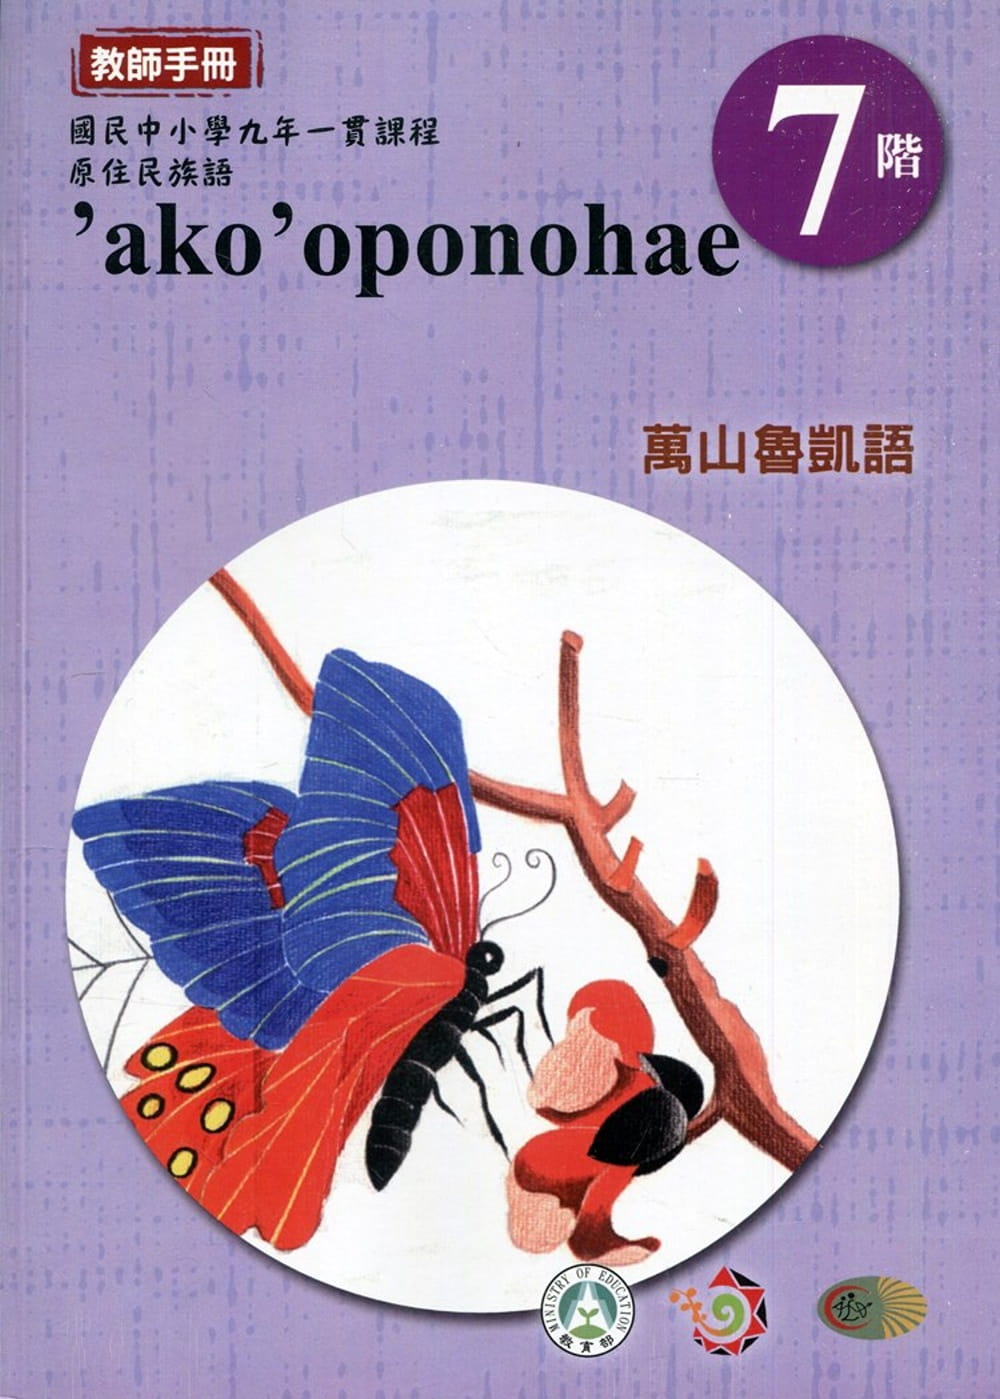 原住民族語萬山魯凱語第七階教師手冊2版